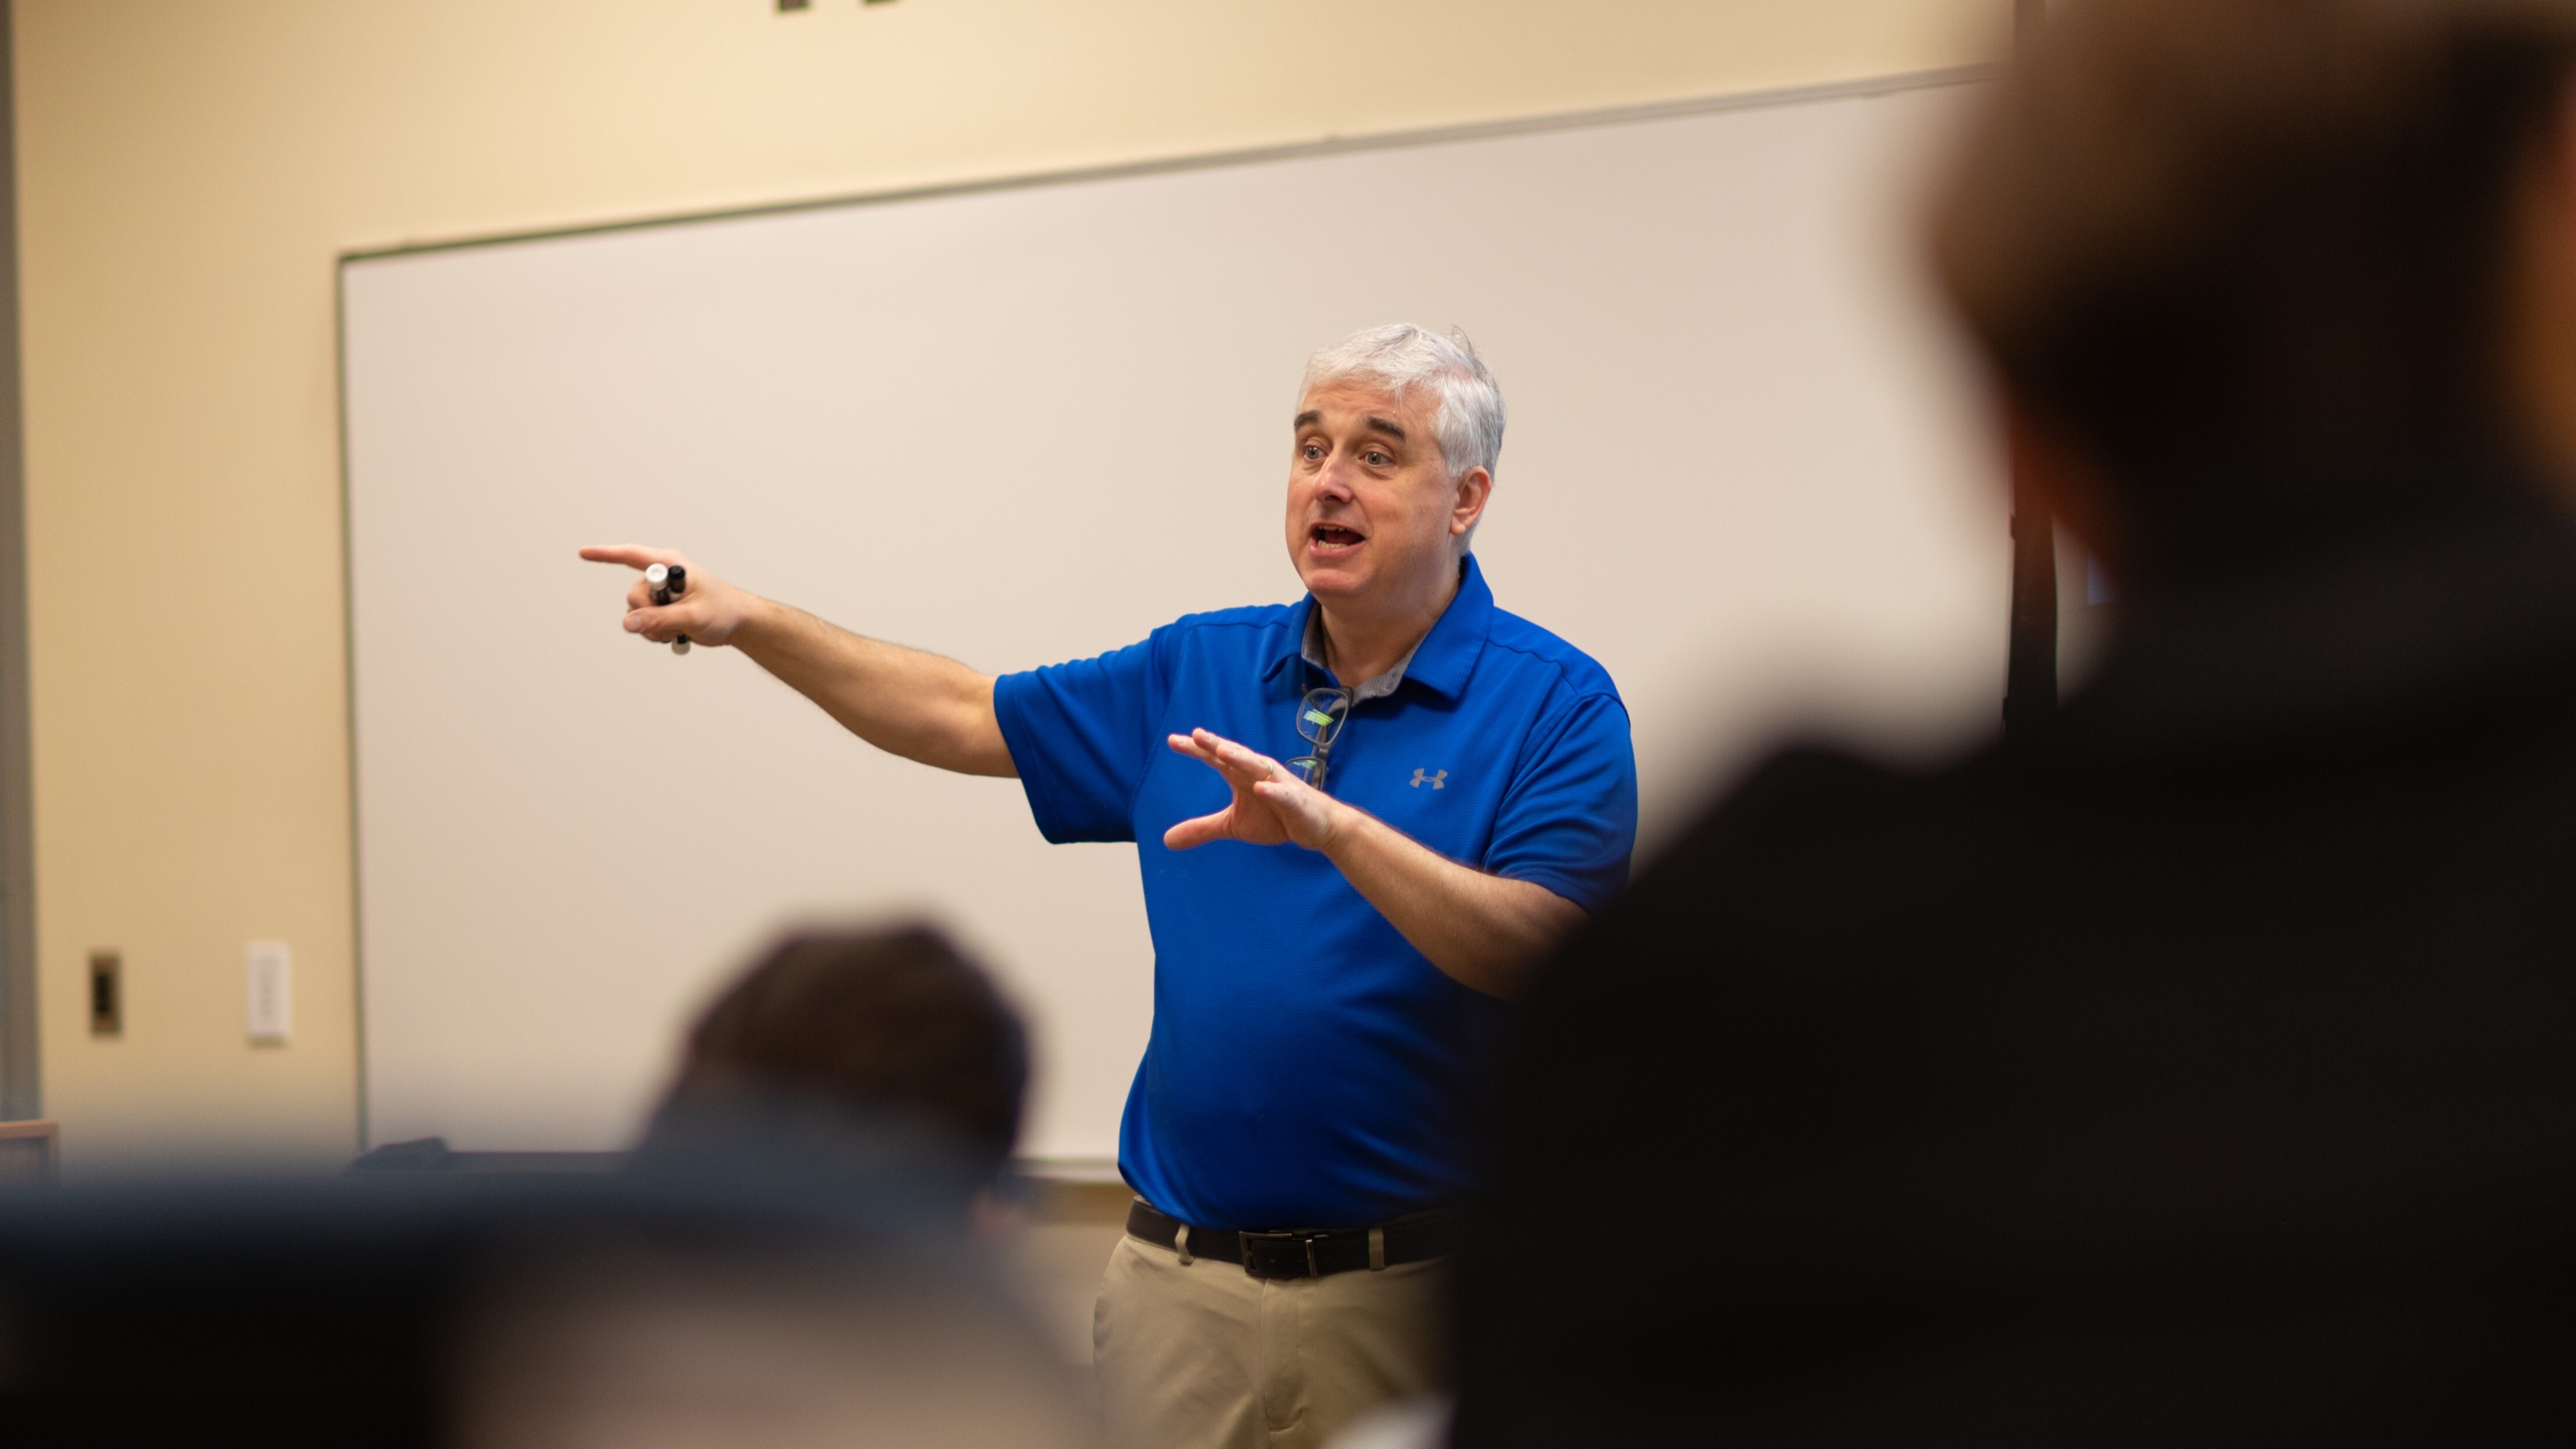 Male professor speaks in front of classroom